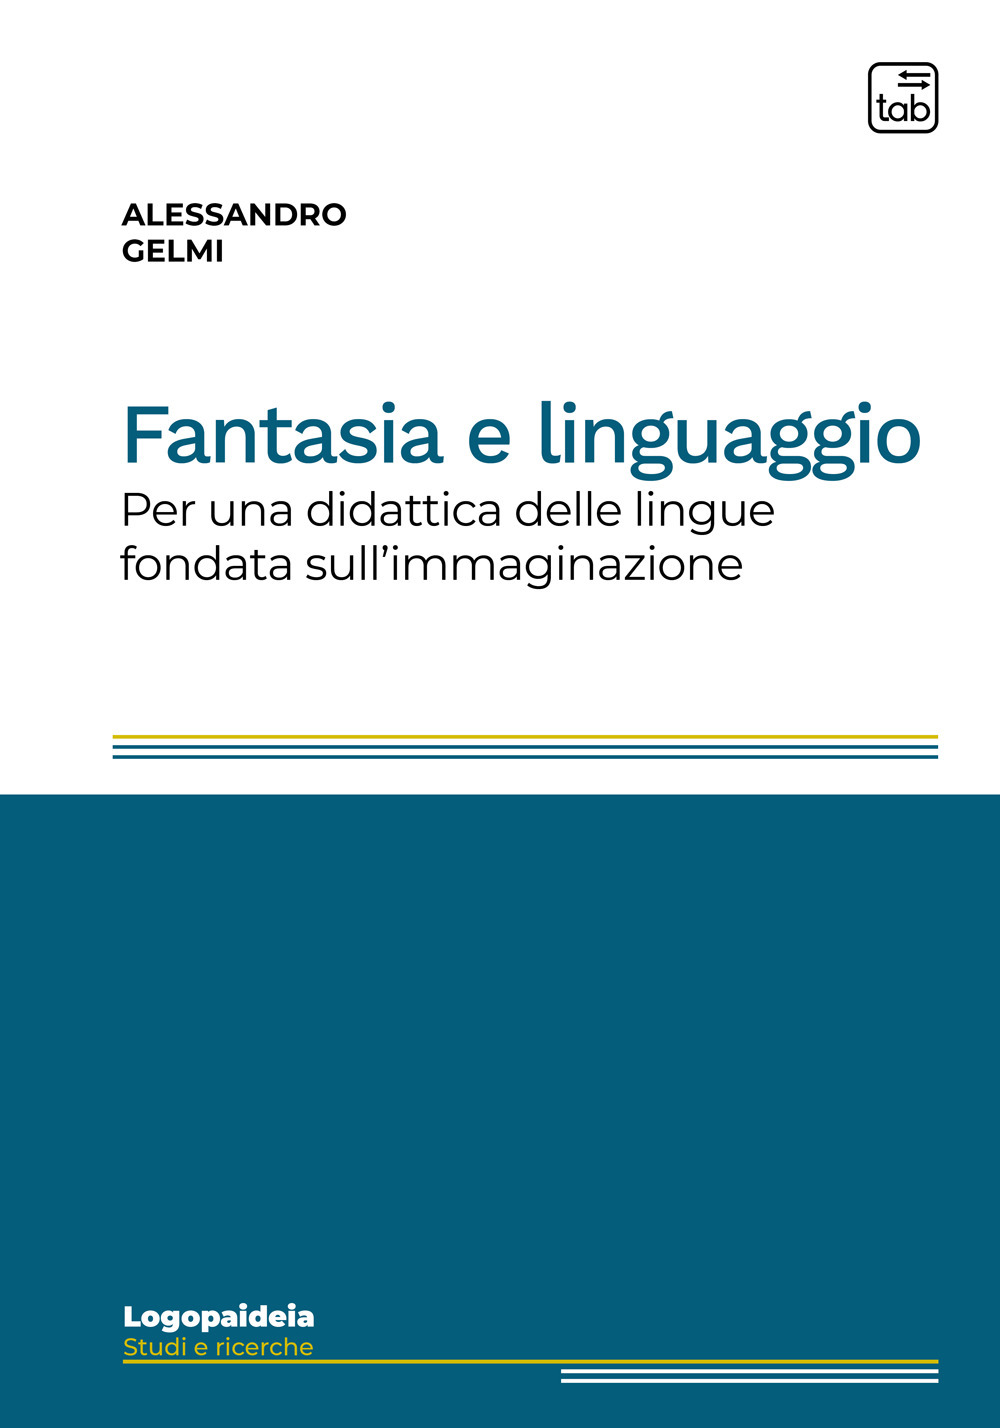 Fantasia e linguaggio. Per una didattica delle lingue fondata sull'immaginazione. Ediz. integrale